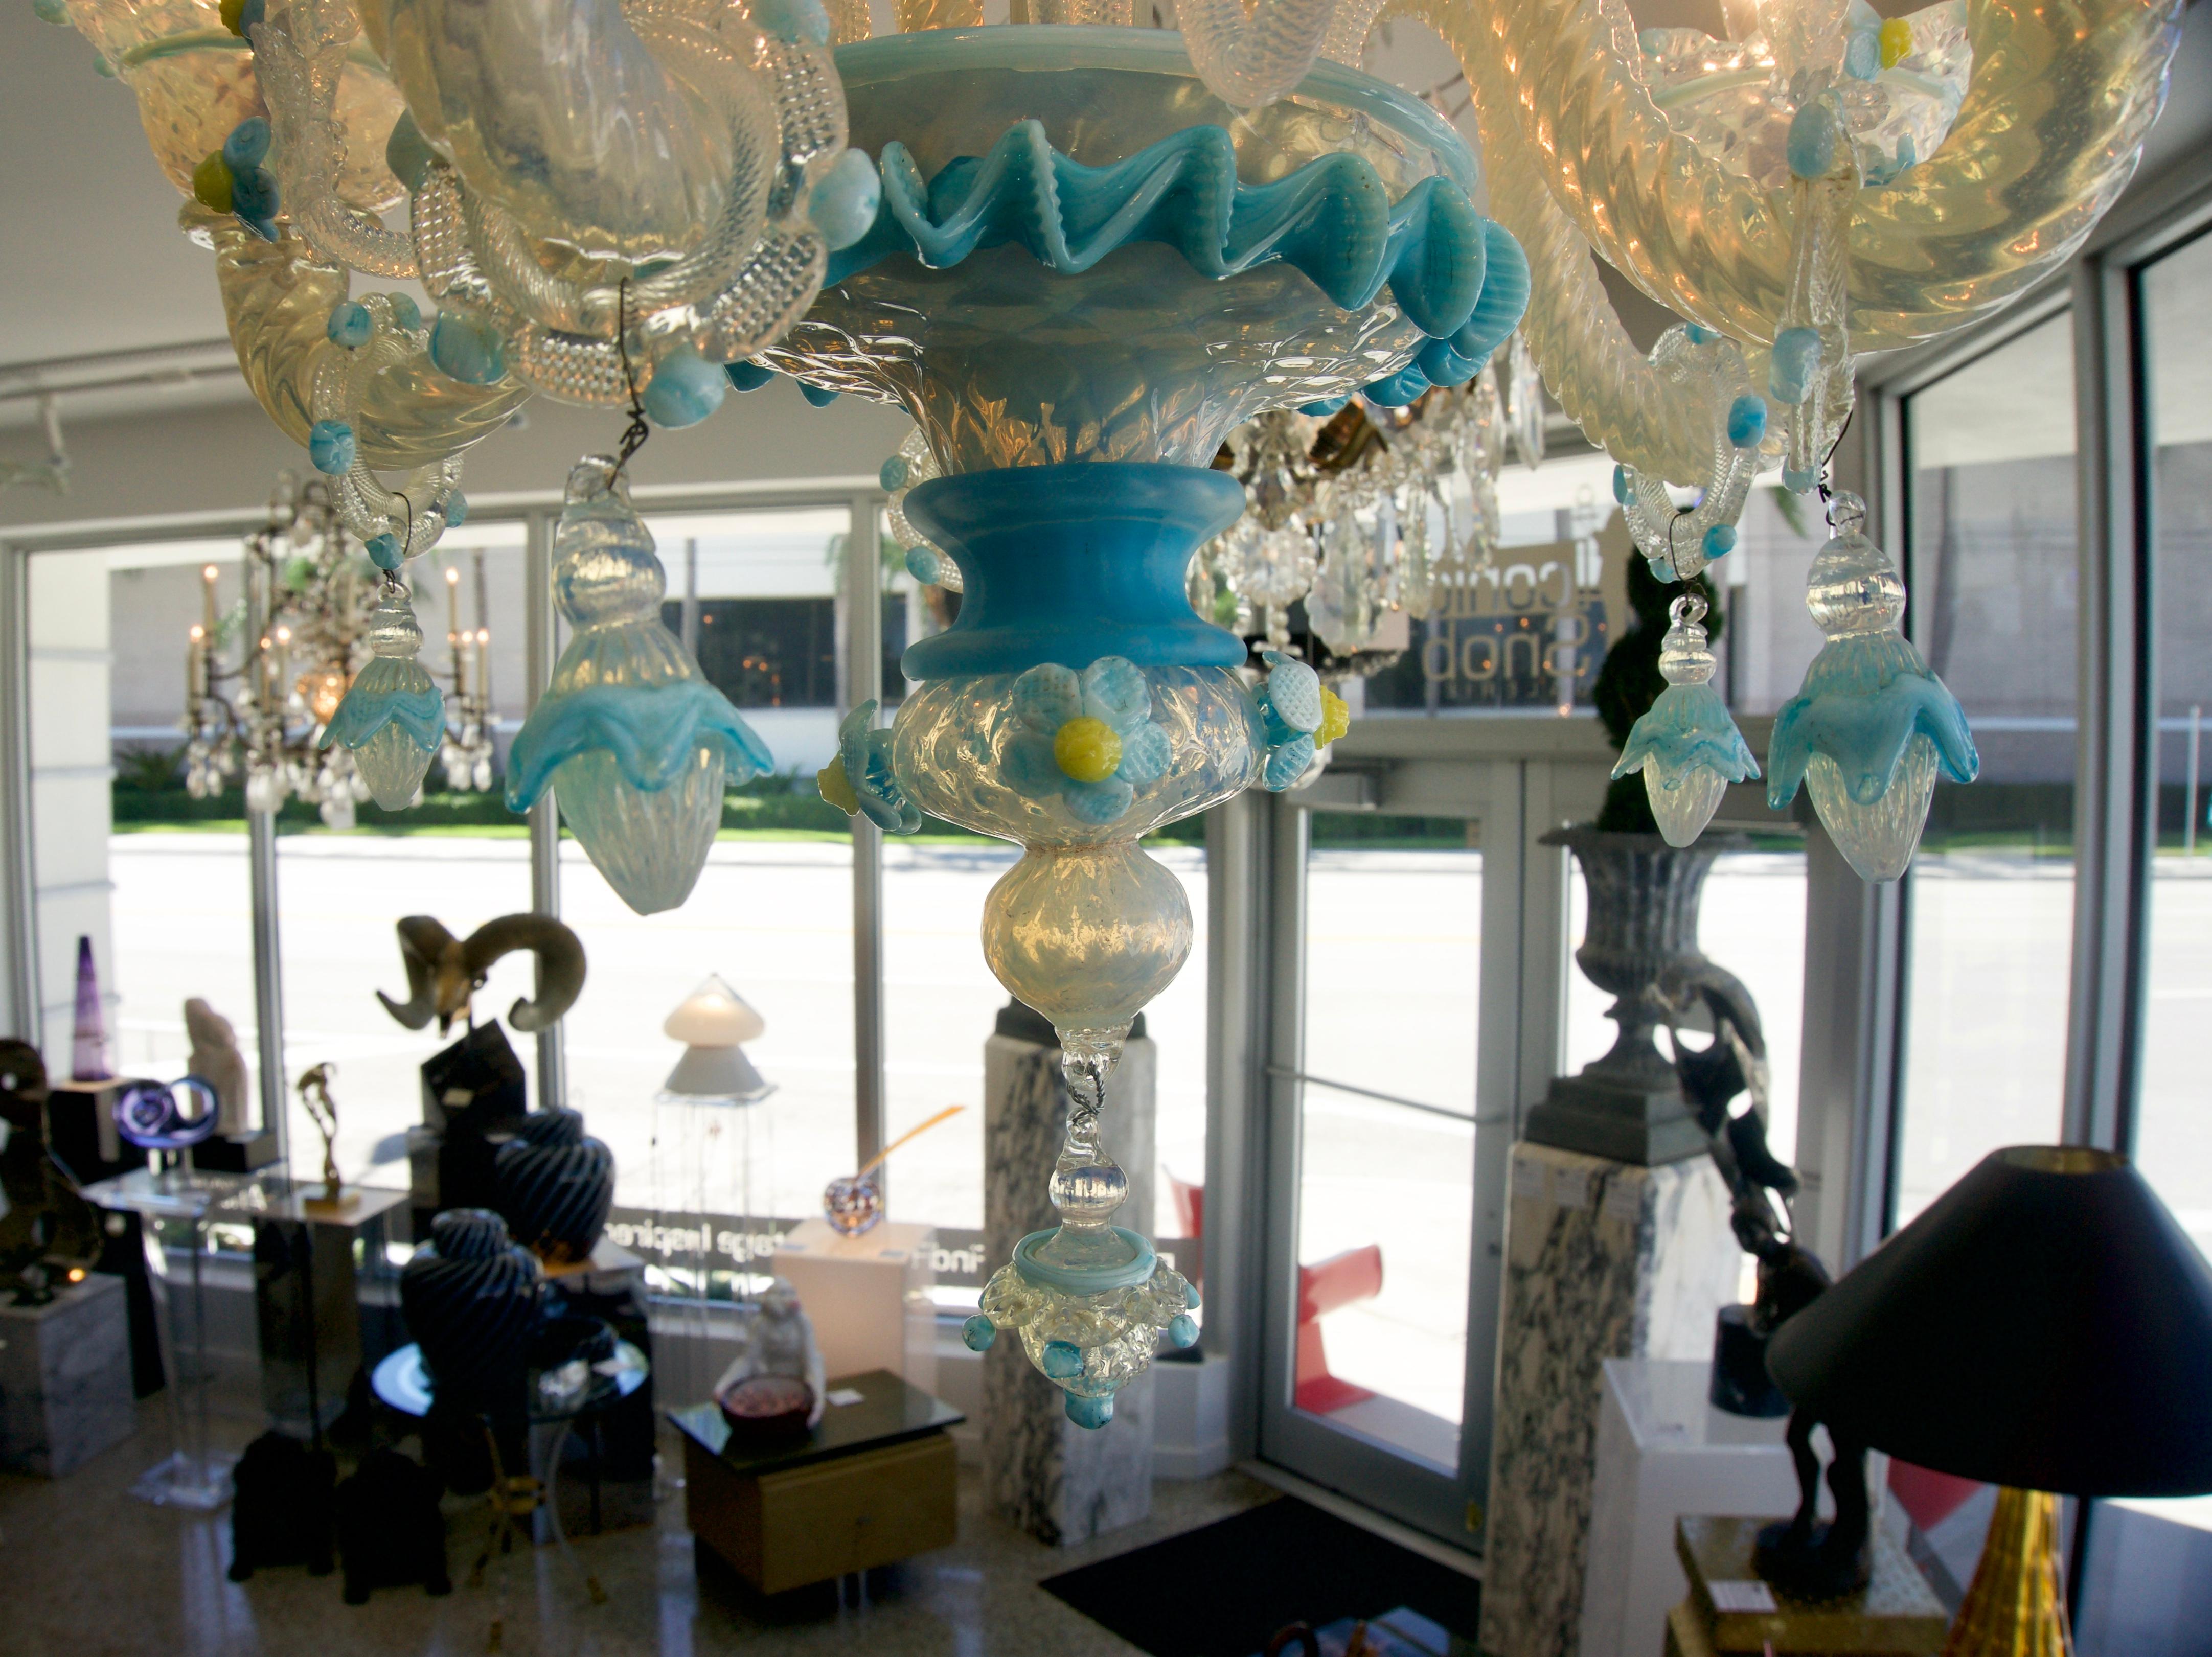 Cet élégant et chic lustre en verre de Murano Galliano Ferro date de la fin des années 1960-1970 et a été acquis auprès d'une propriété de Palm Beach. Le corps principal du lustre est un verre opalin translucide avec des accents de bleu, vert et